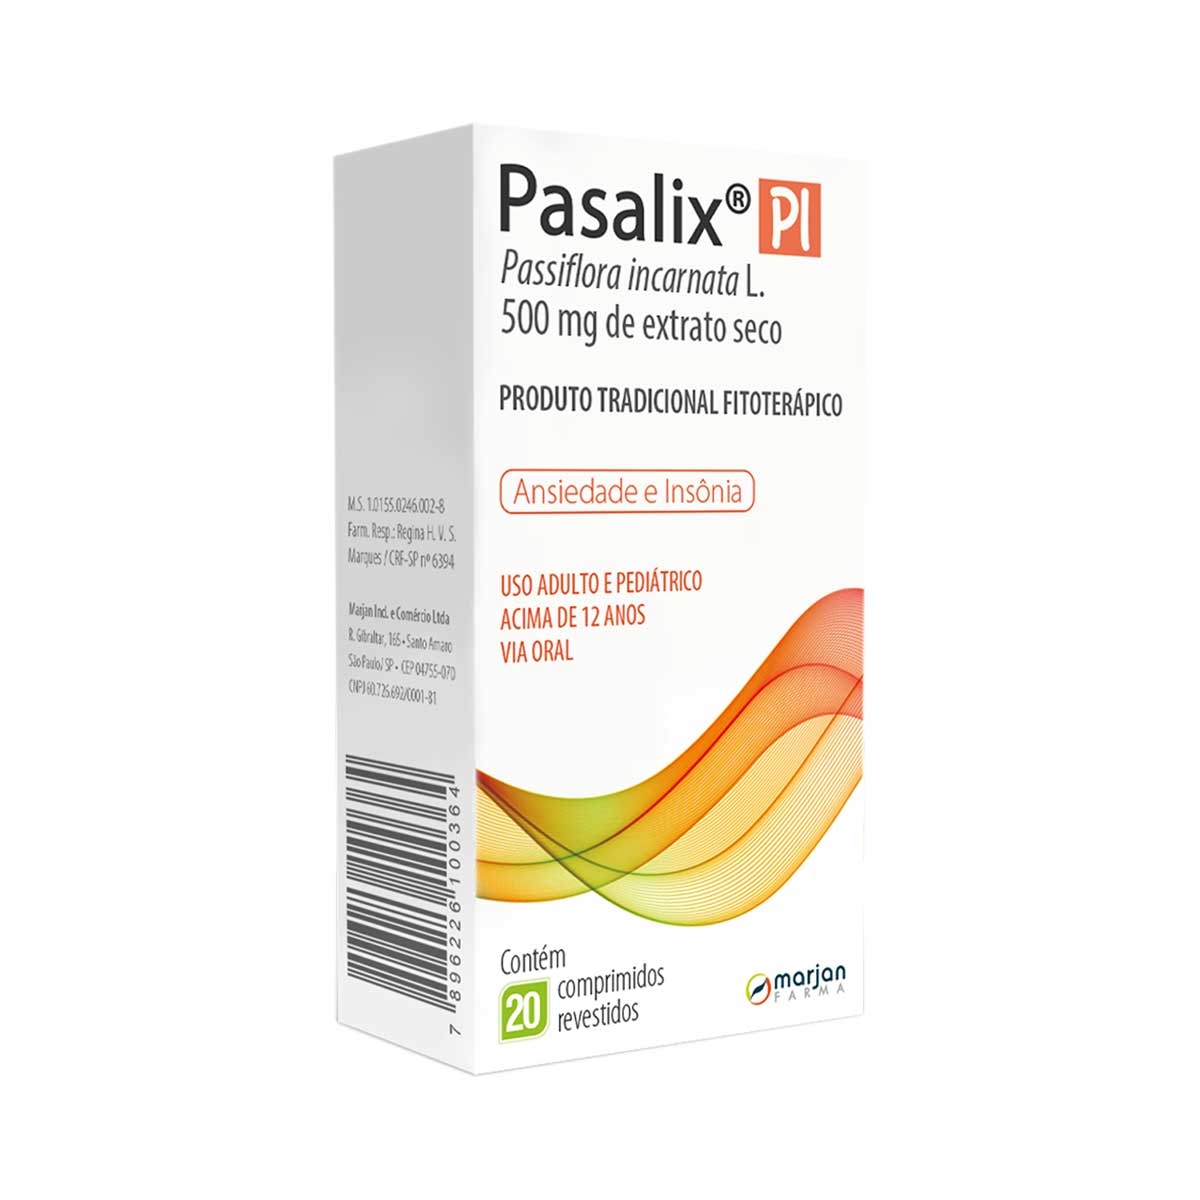 Pasalix PI 500mg com 20 comprimidos